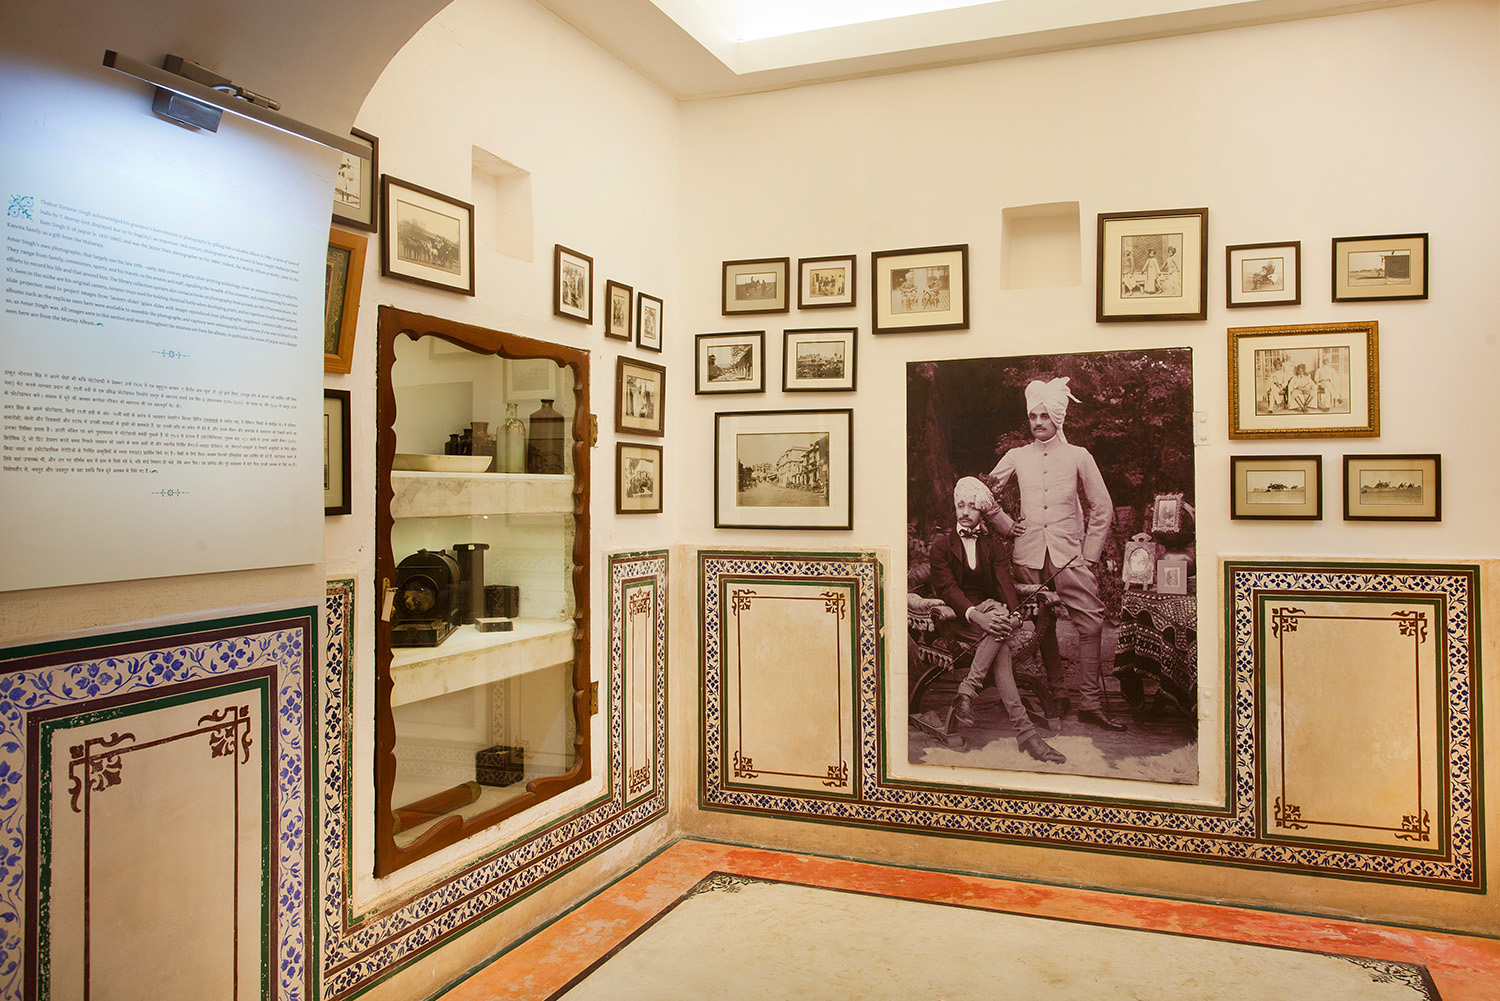 Kanota Museum in Jaipur